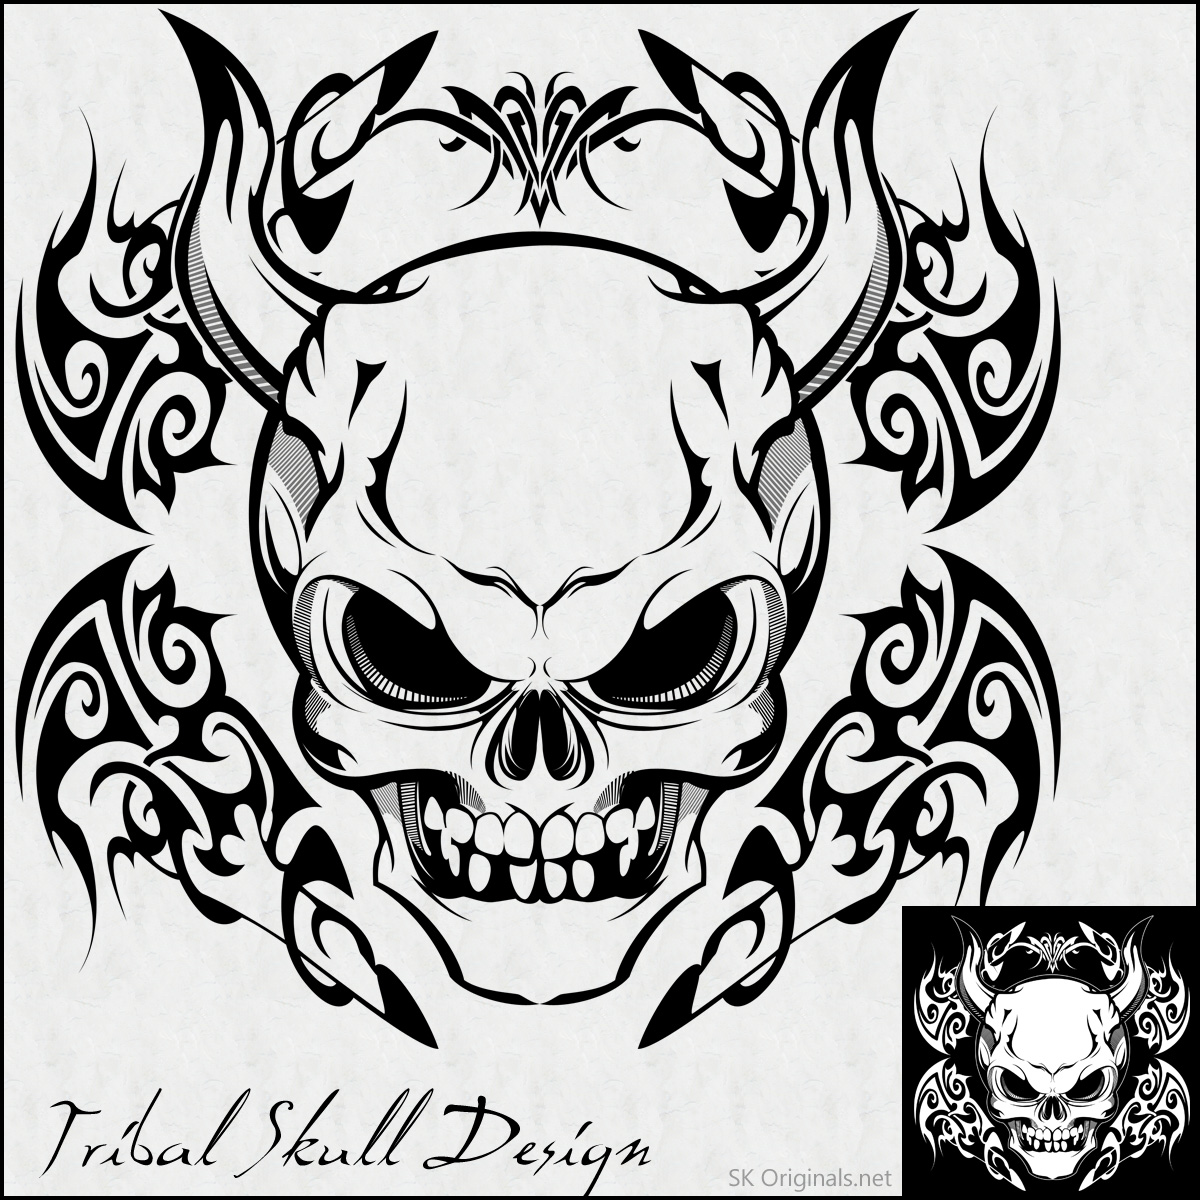 Tribal Skull Design by SKoriginals on DeviantArt